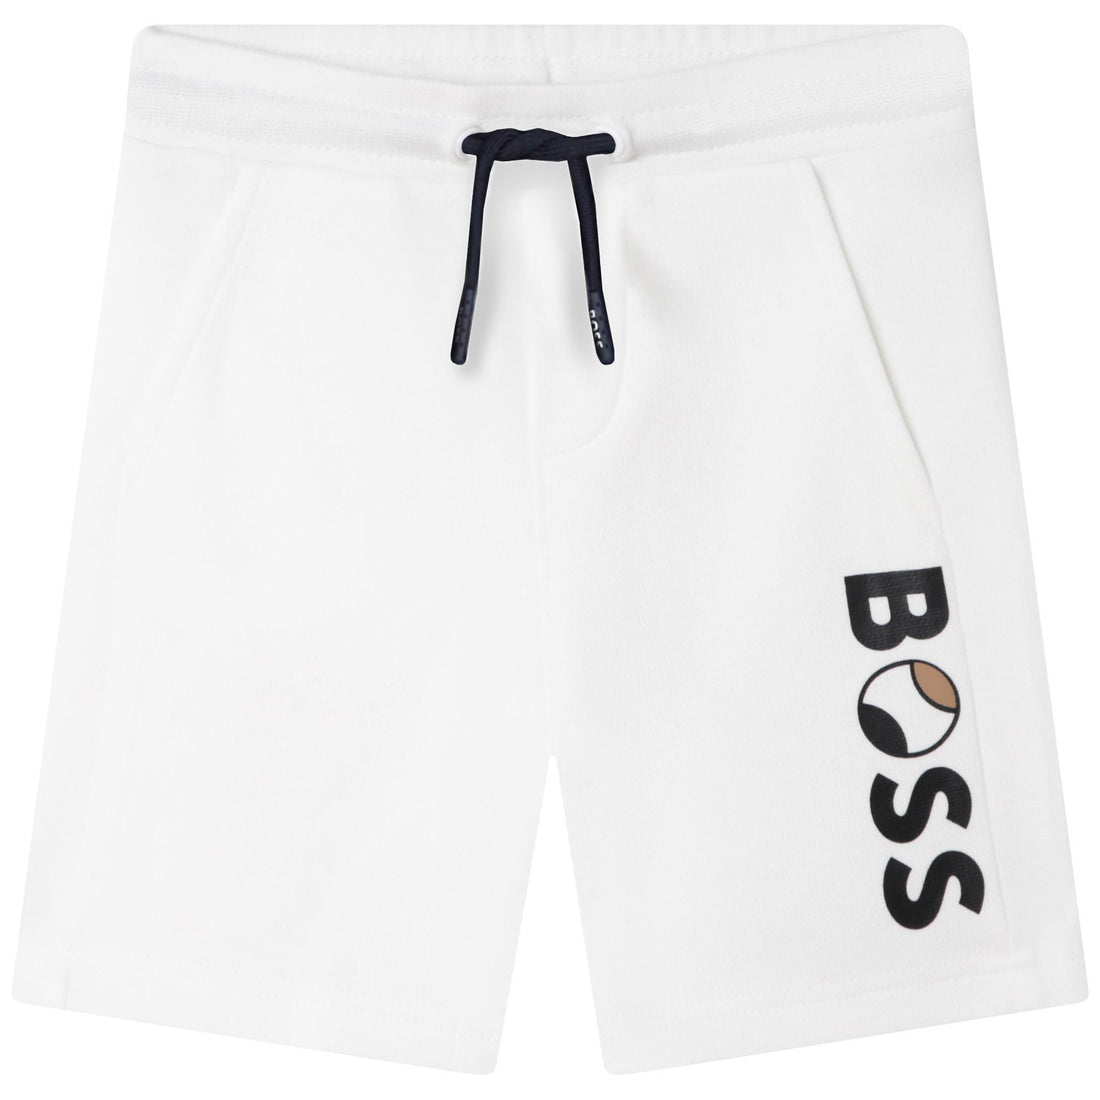 Hugo Boss Short Style: J04466